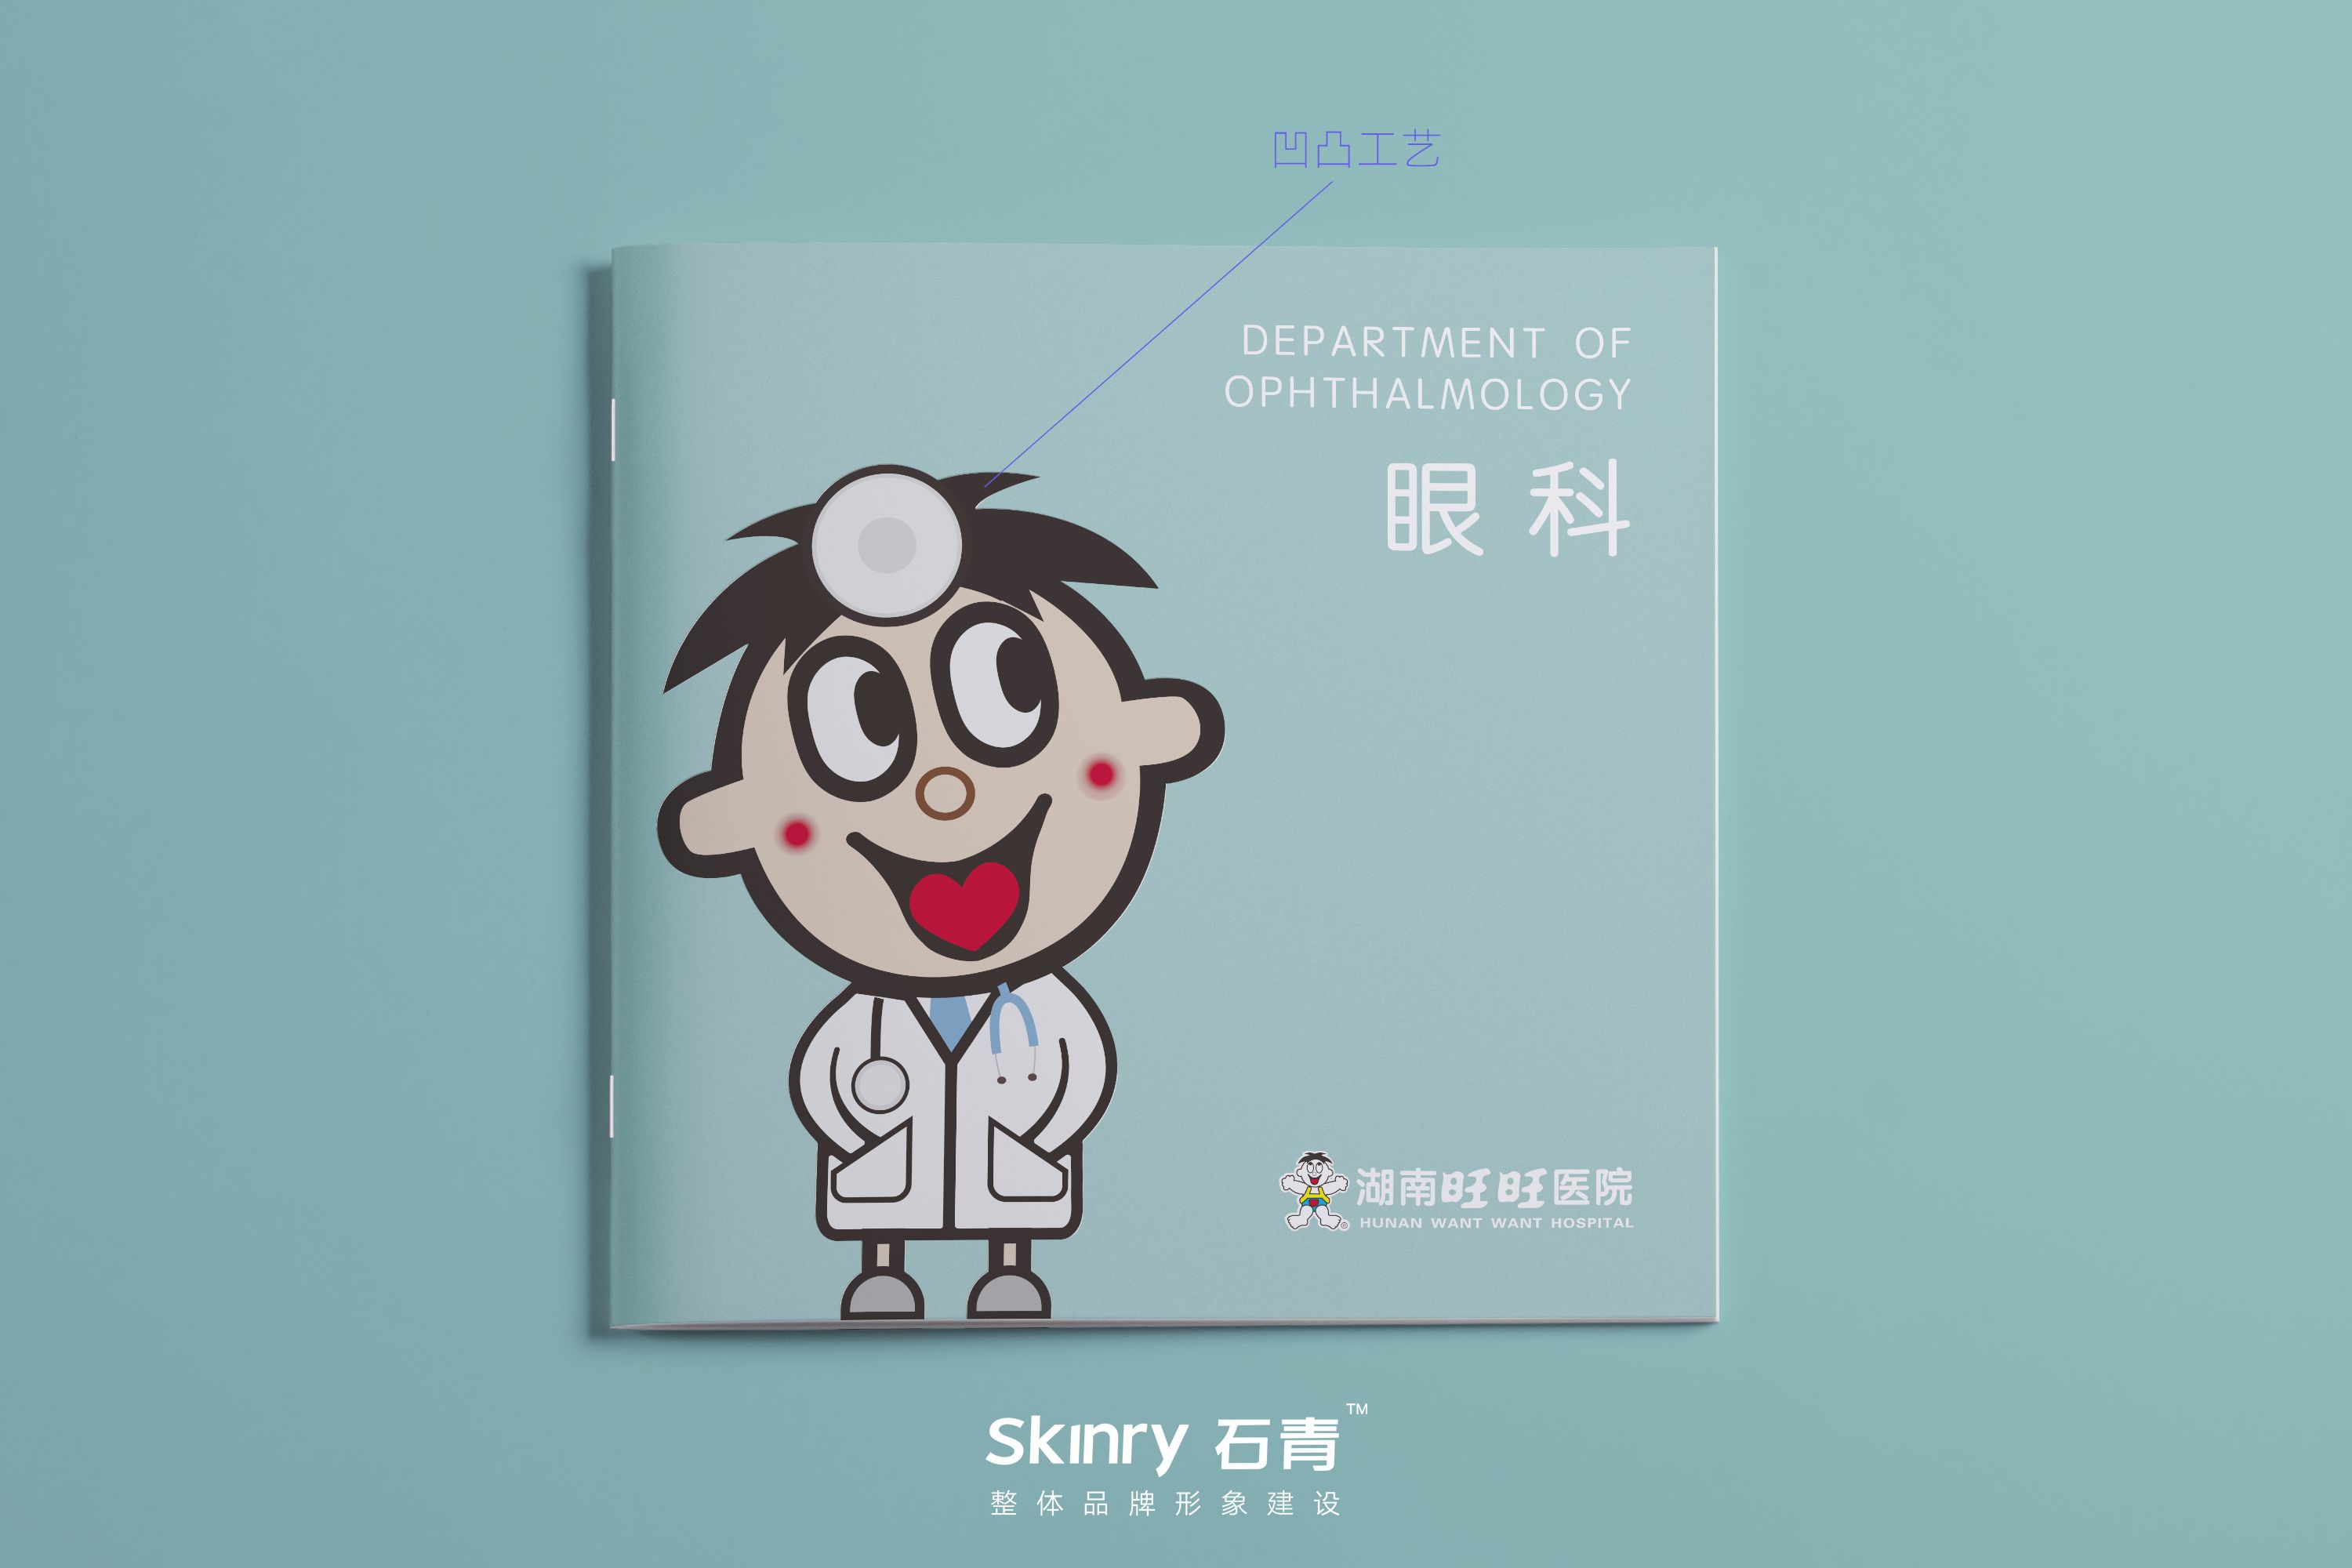 旺旺集团医院宣传画册设计